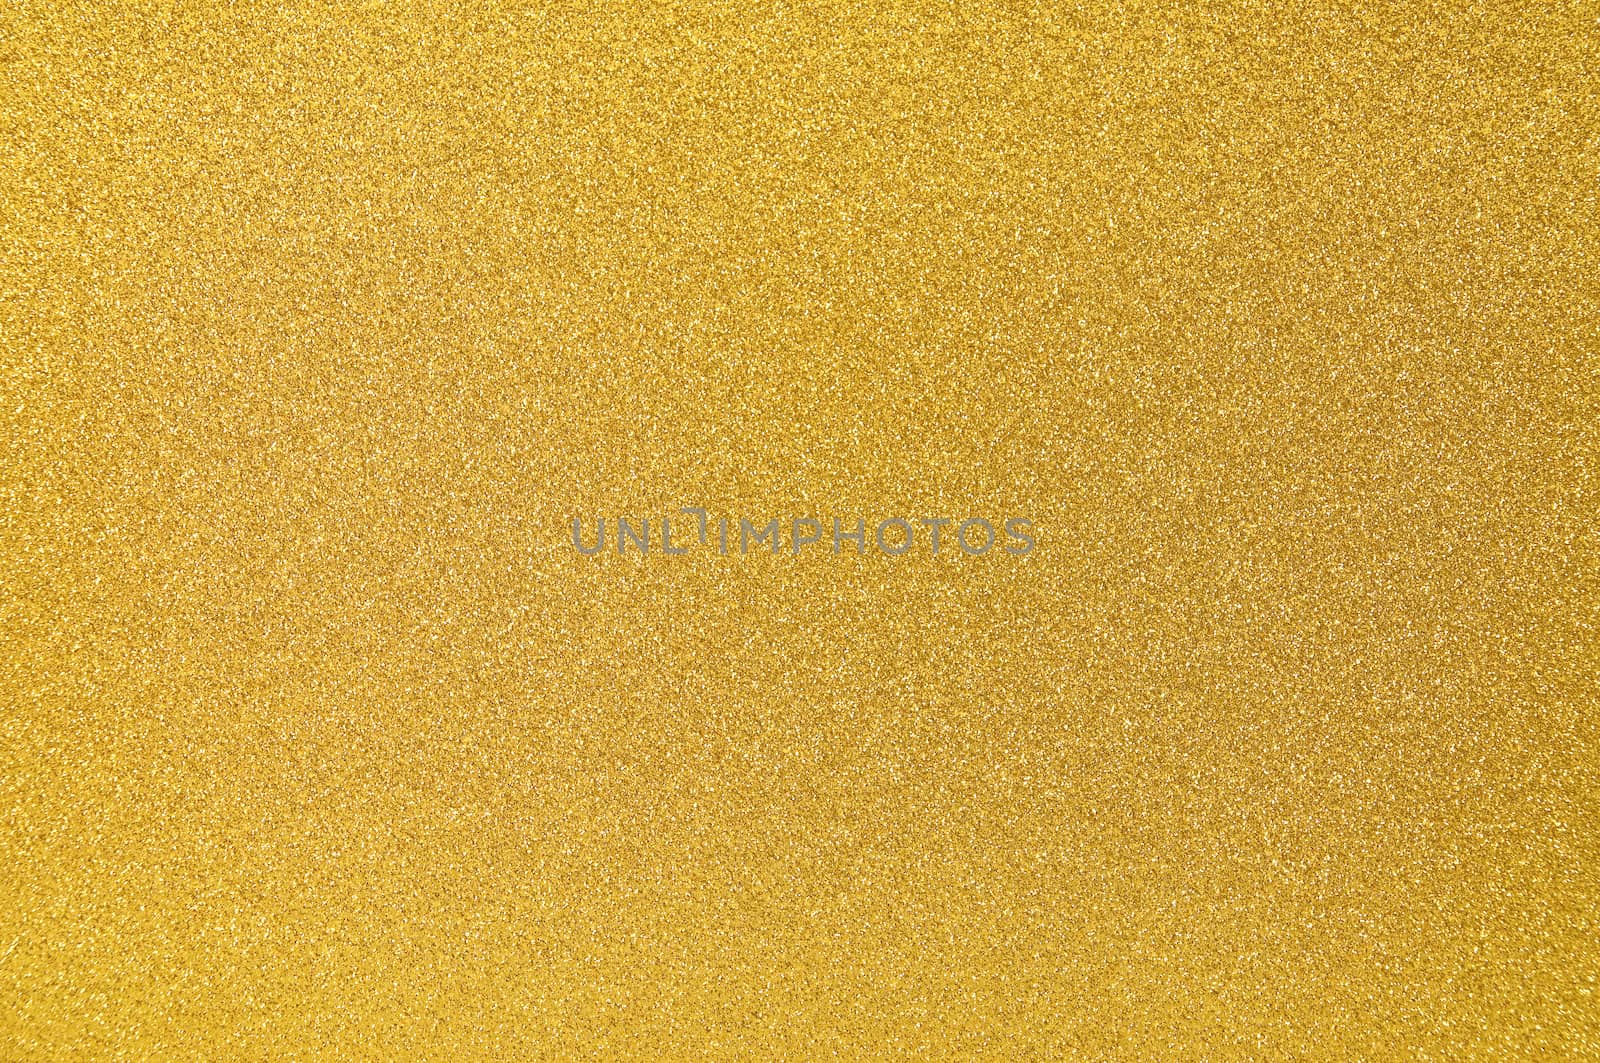 Unique Gold Texture by Rainman